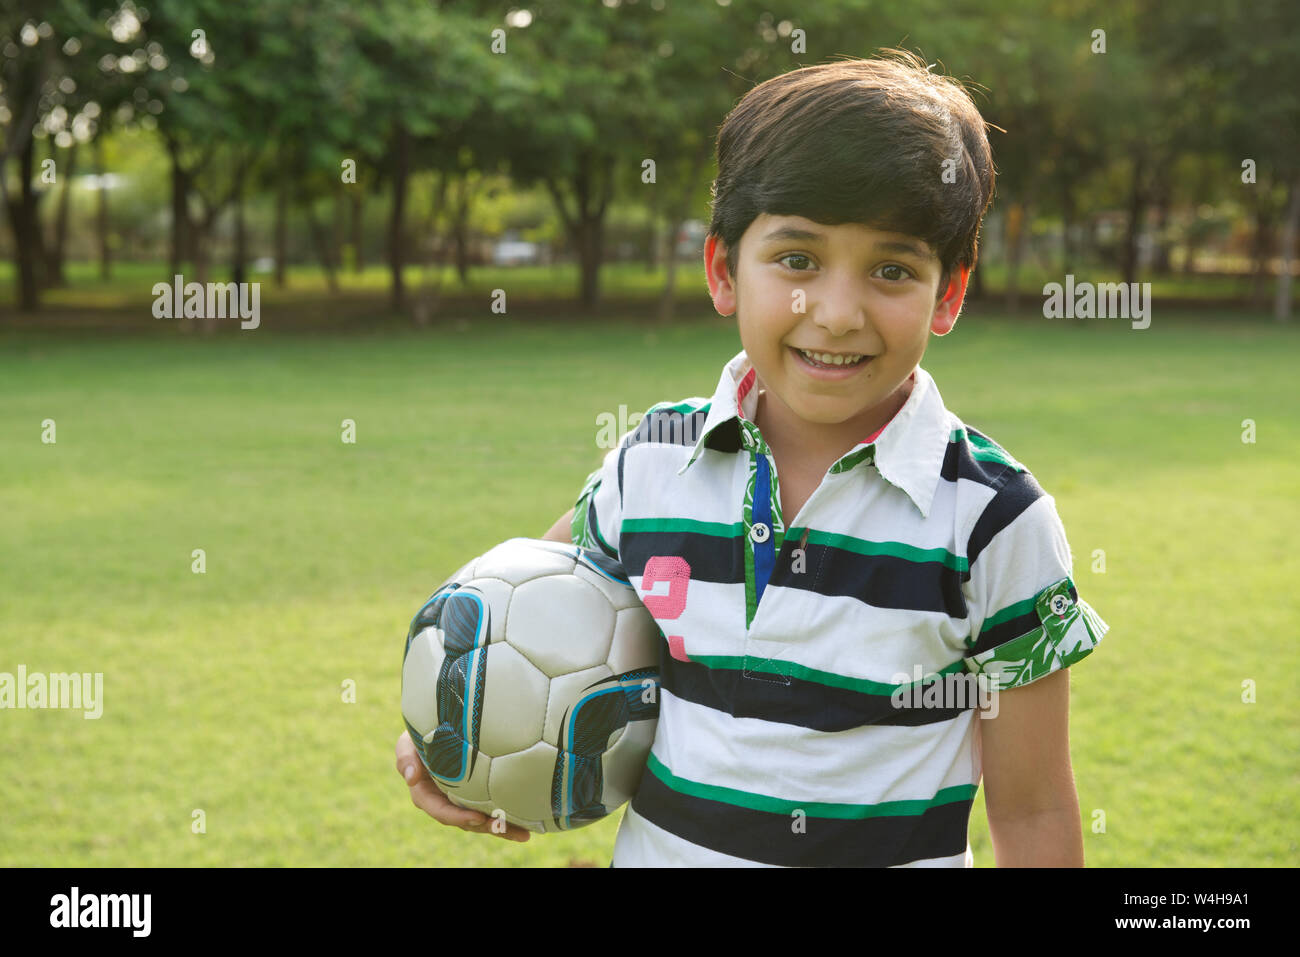 Bildnis eines Knaben halten einen Fußball und lächelnd Stockfoto